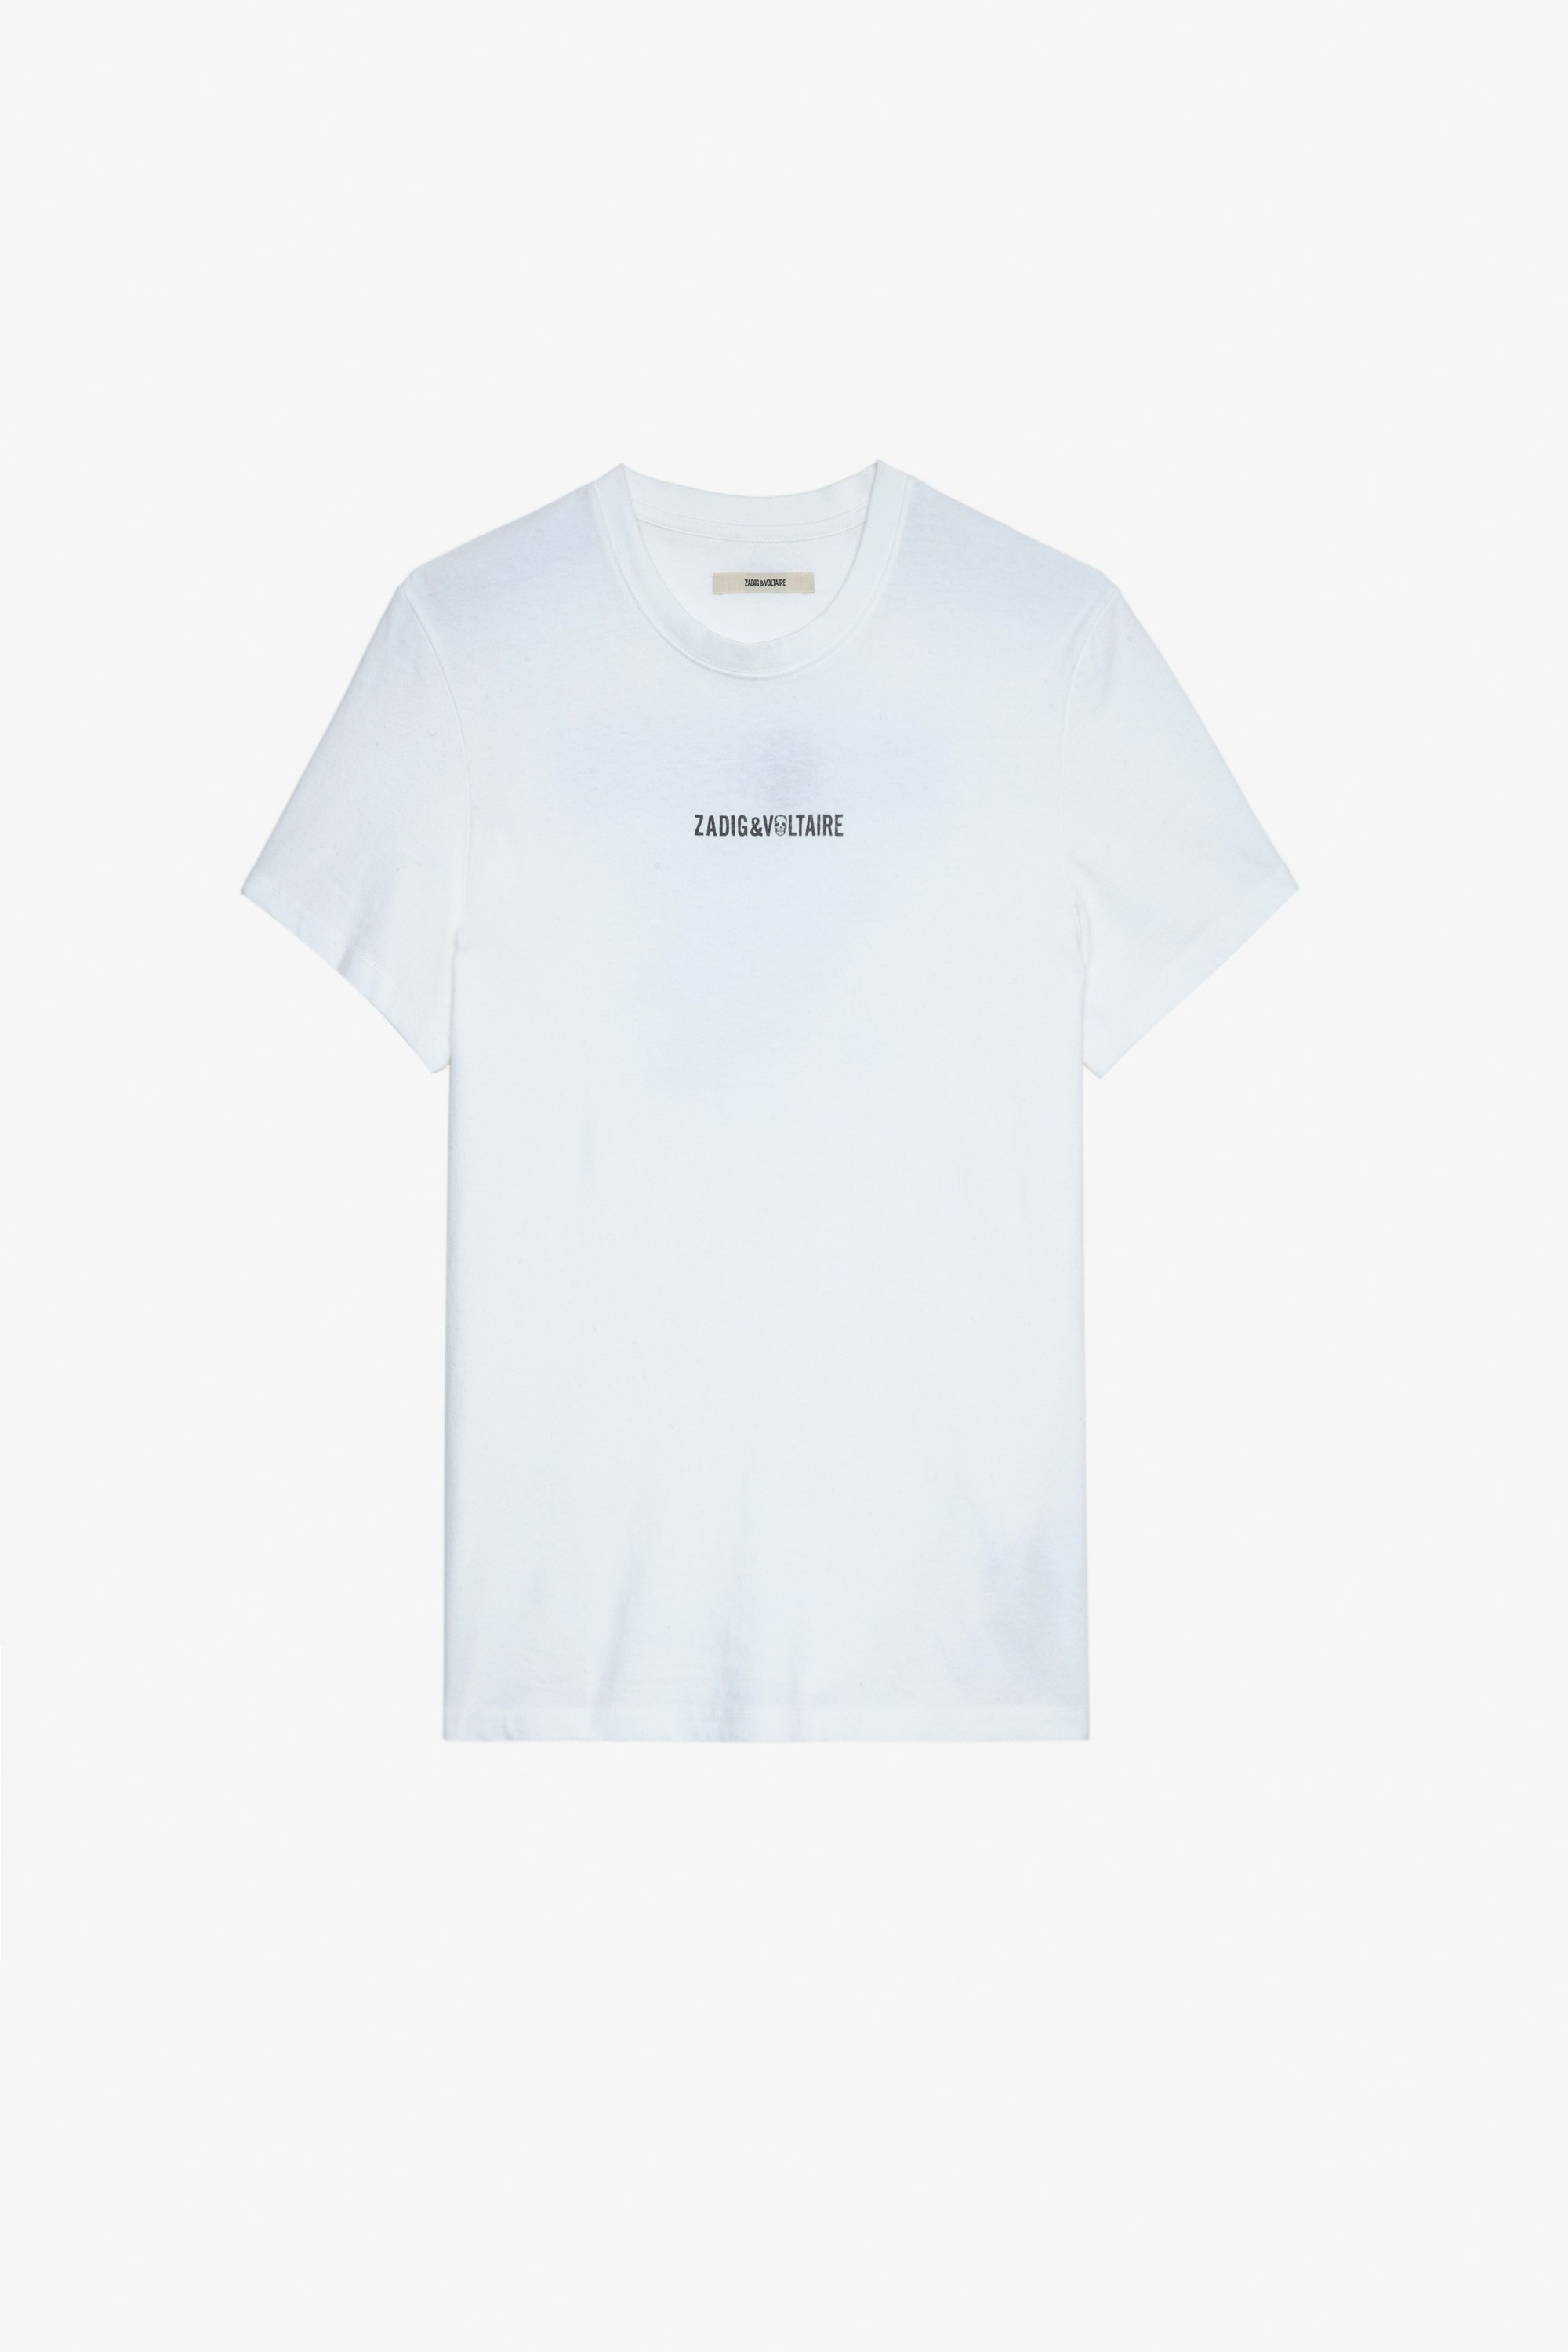 Camiseta Ted Camiseta de color crudo de algodón para hombre con firma ZV en la parte delantera y mensaje «Hédoniste» en la espalda